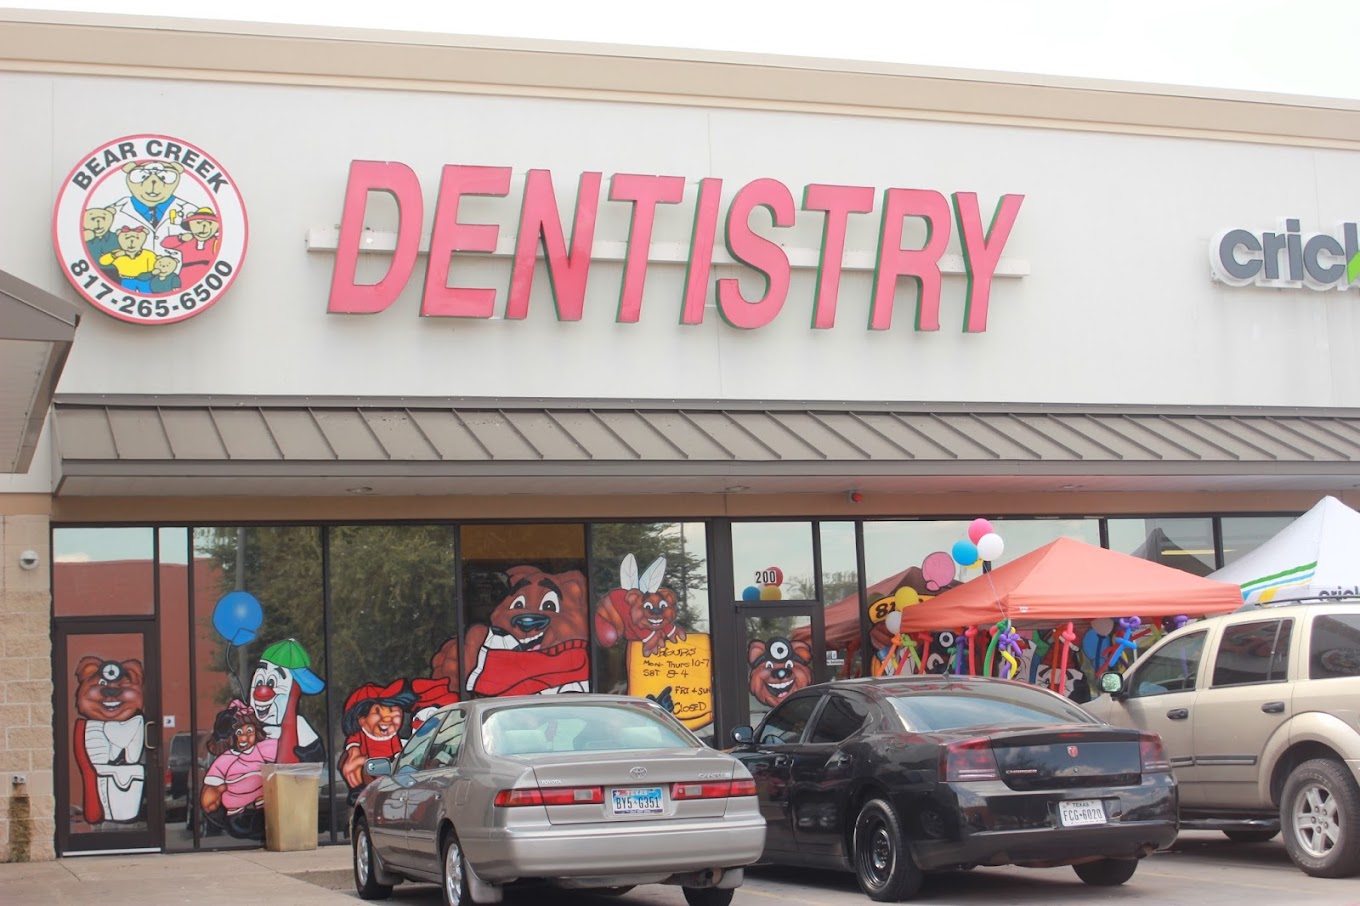 Bear Creek Family Dentistry – South Arlington